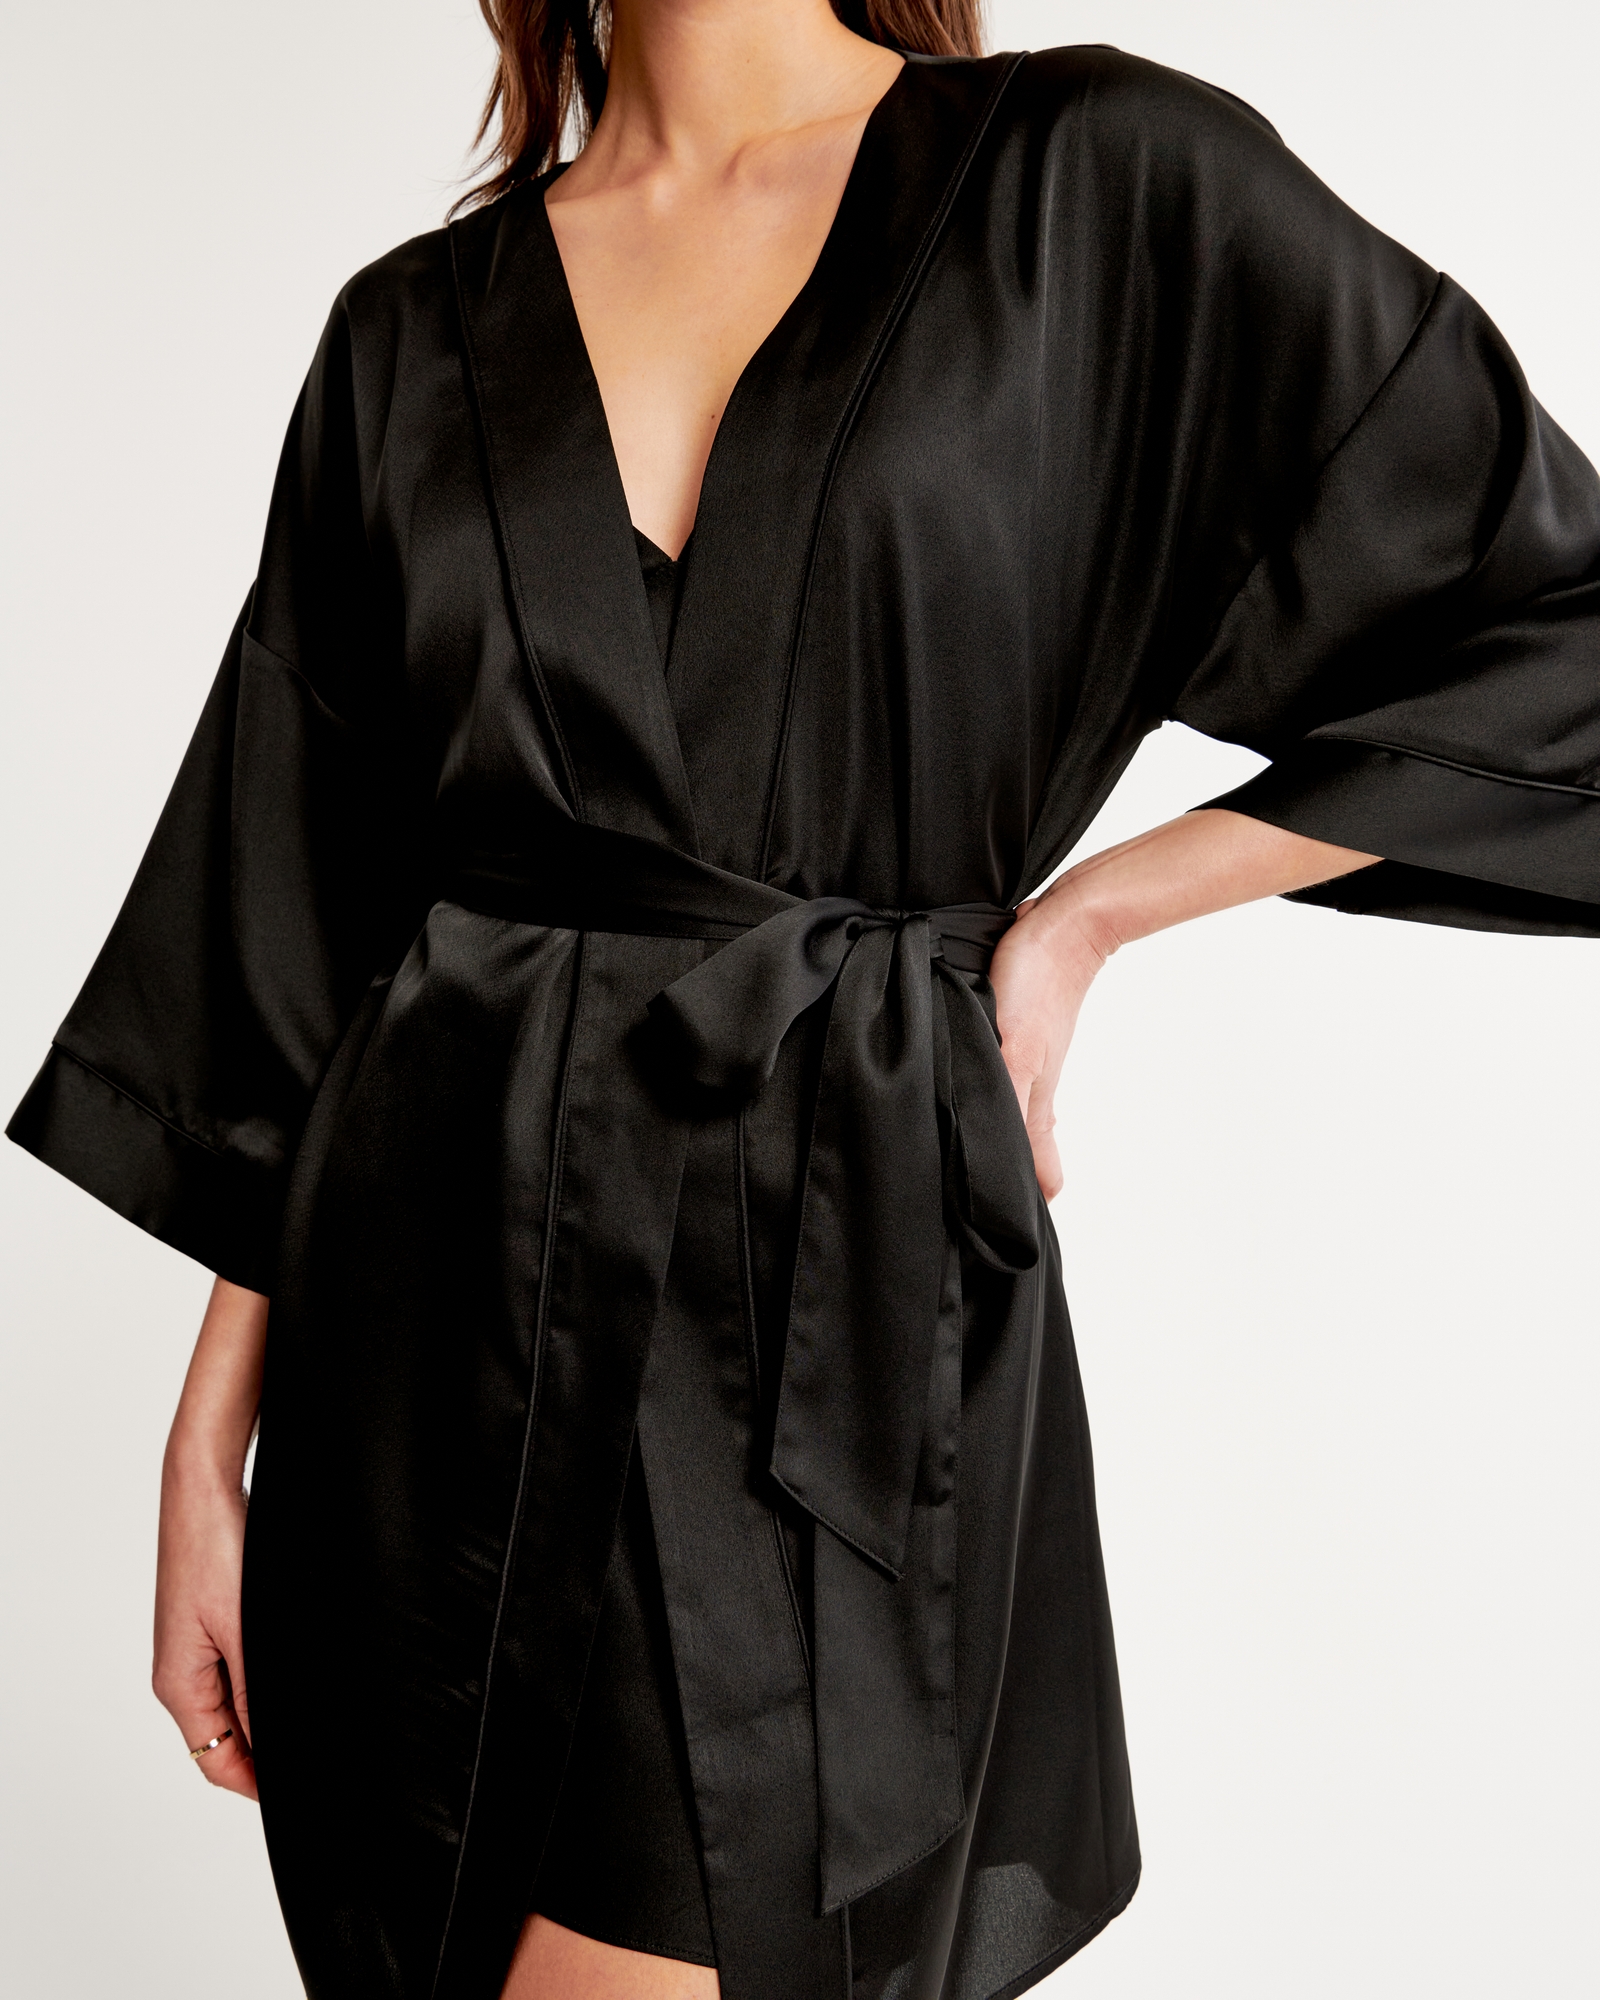 Women's Satin Robe, Women's Intimates & Sleepwear